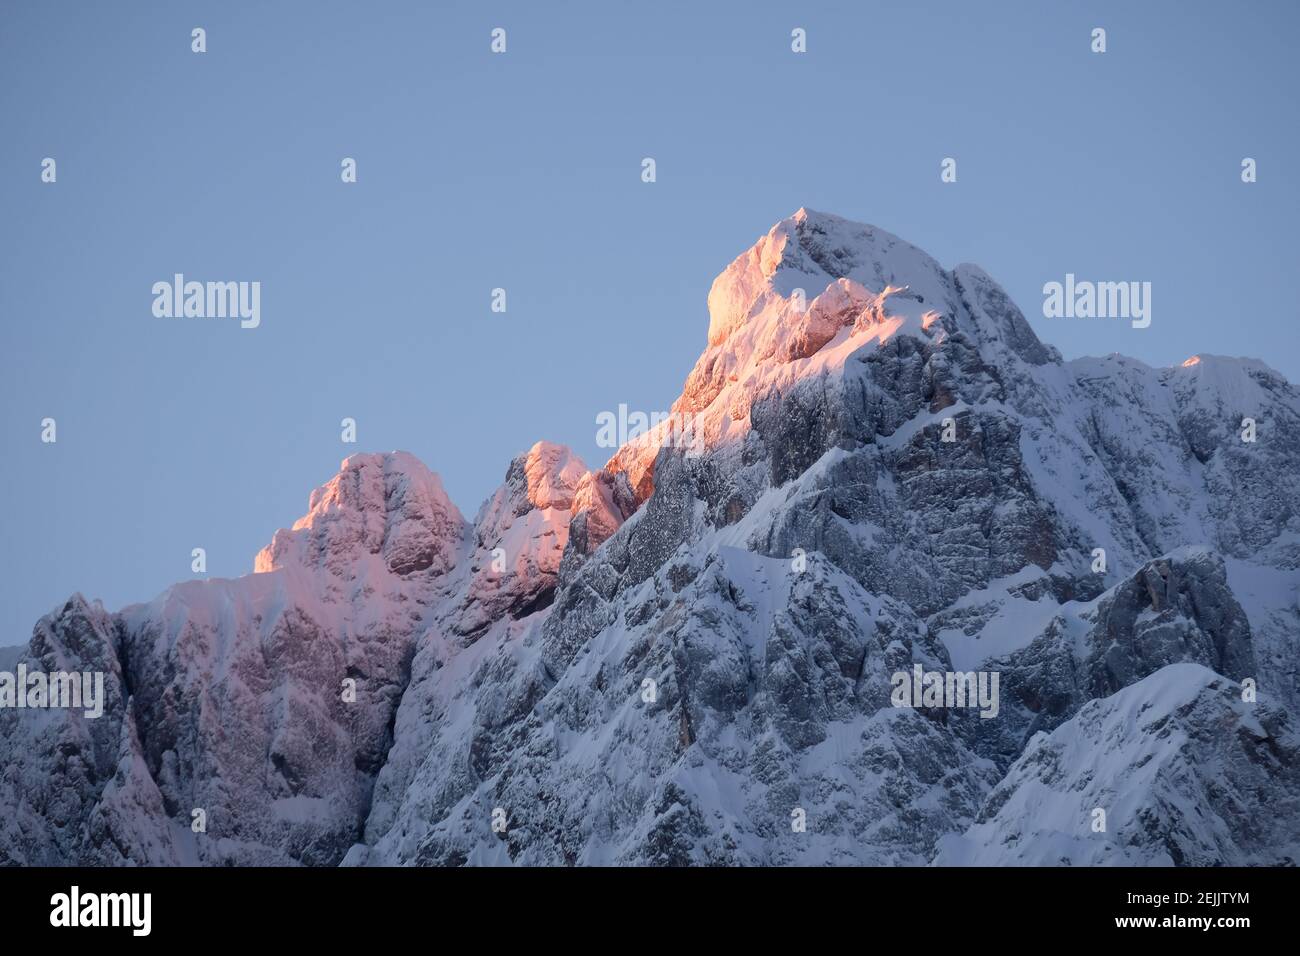 Magnifique gros plan d'un sommet de montagne rose dans les Alpes au coucher du soleil tandis que le vent souffle de la neige au large de la montagne. Puissance des éléments naturels Banque D'Images